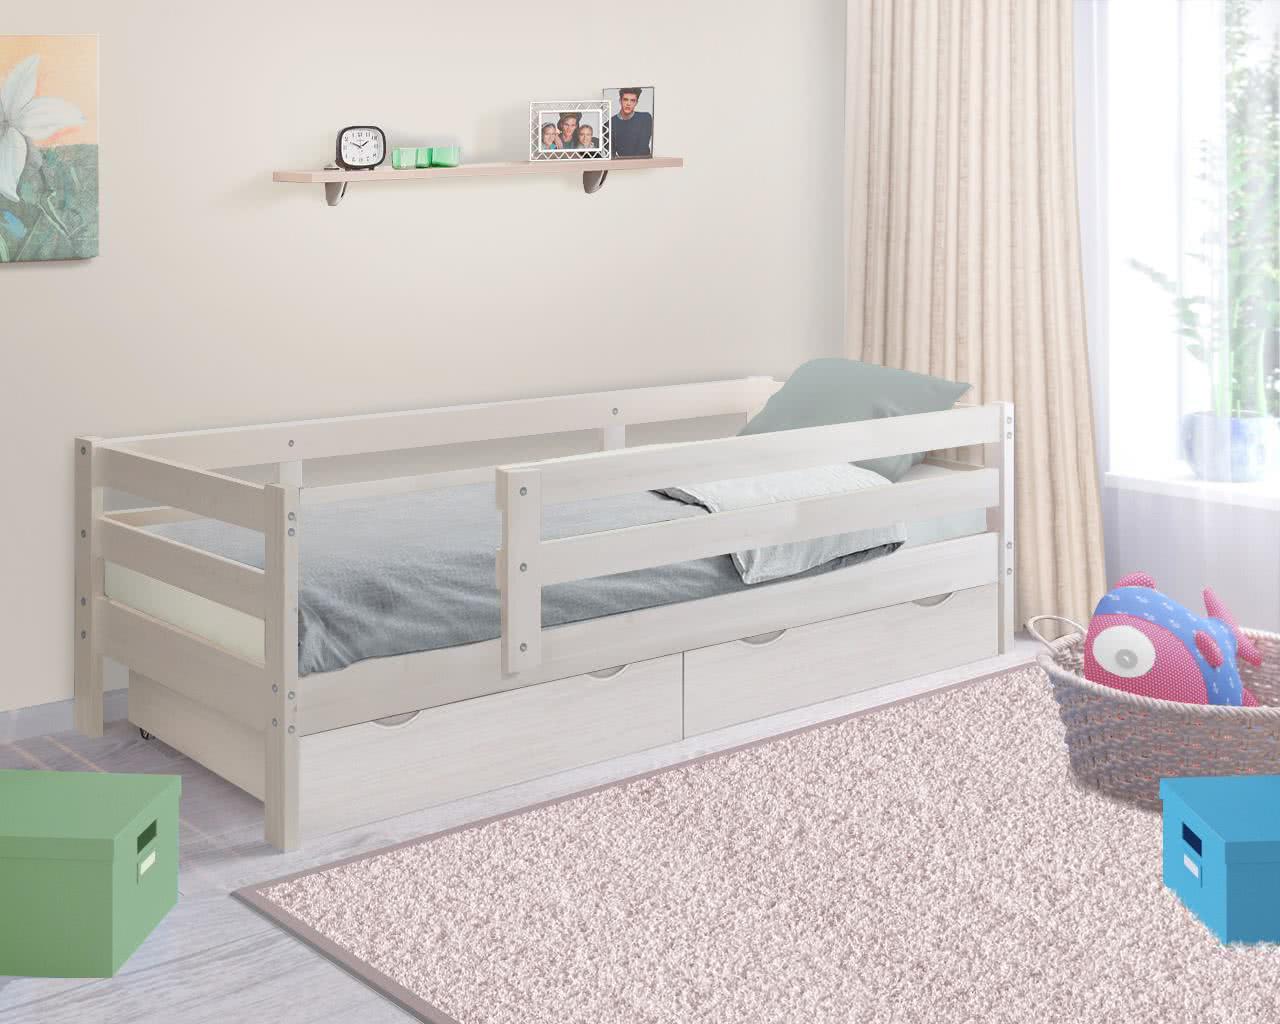 Купить кровать Боровичи-мебель Кровать Боровичи массив Норка, Выбеленная береза Выбеленная береза дешево на официальном сайте